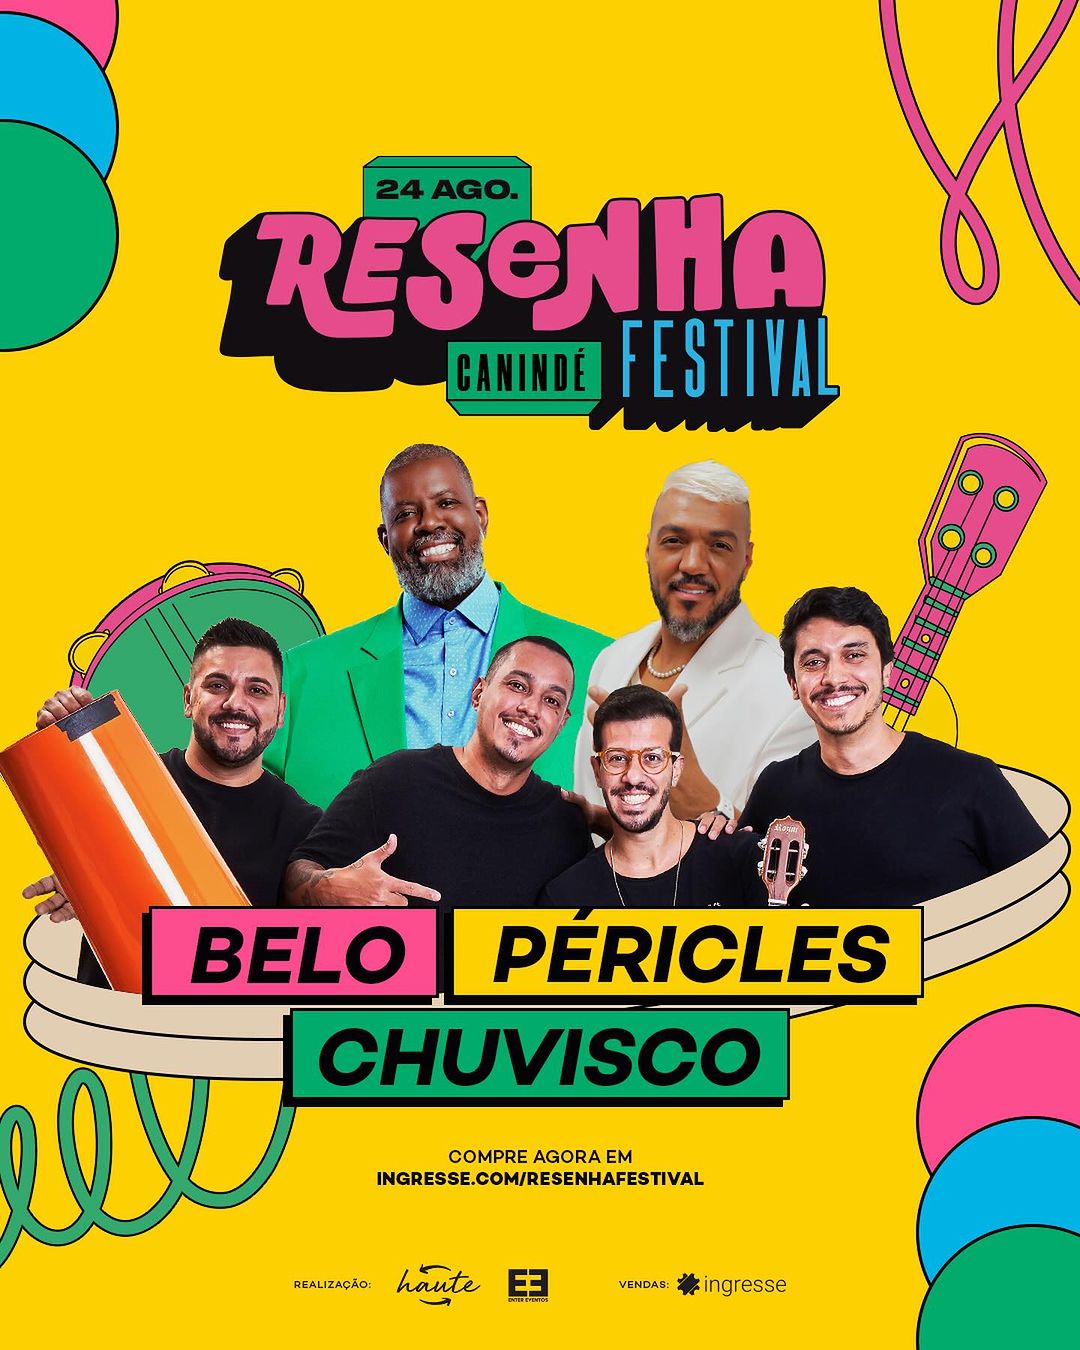 Resenha Festival - Canindé São Paulo